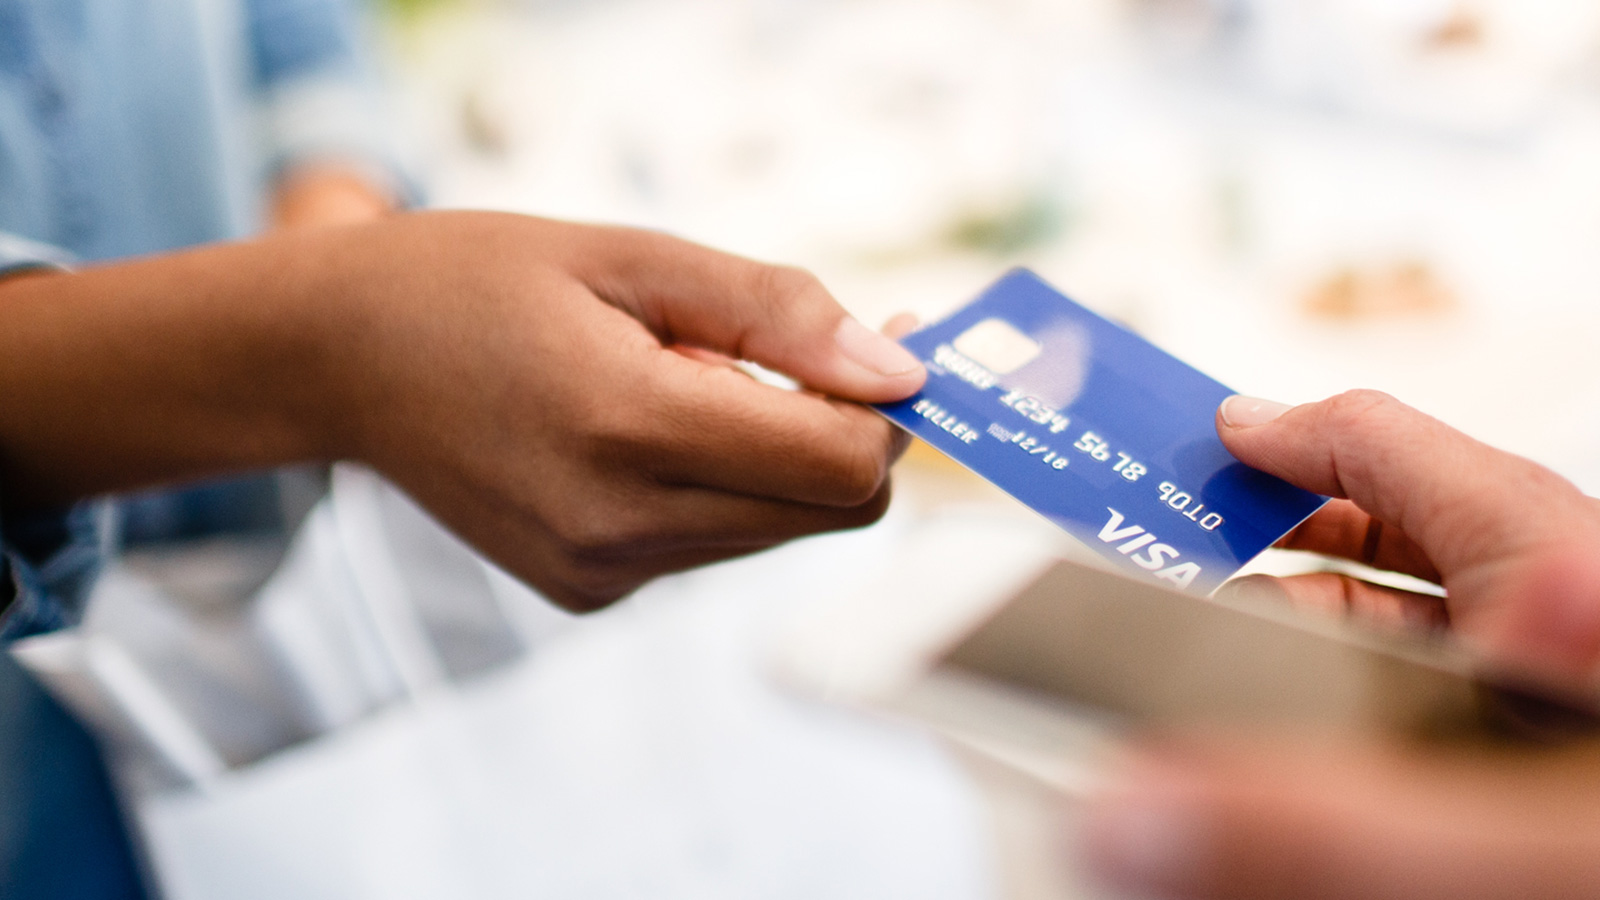 Quer fazer um cartão de crédito? Conheça as opções da Visa 